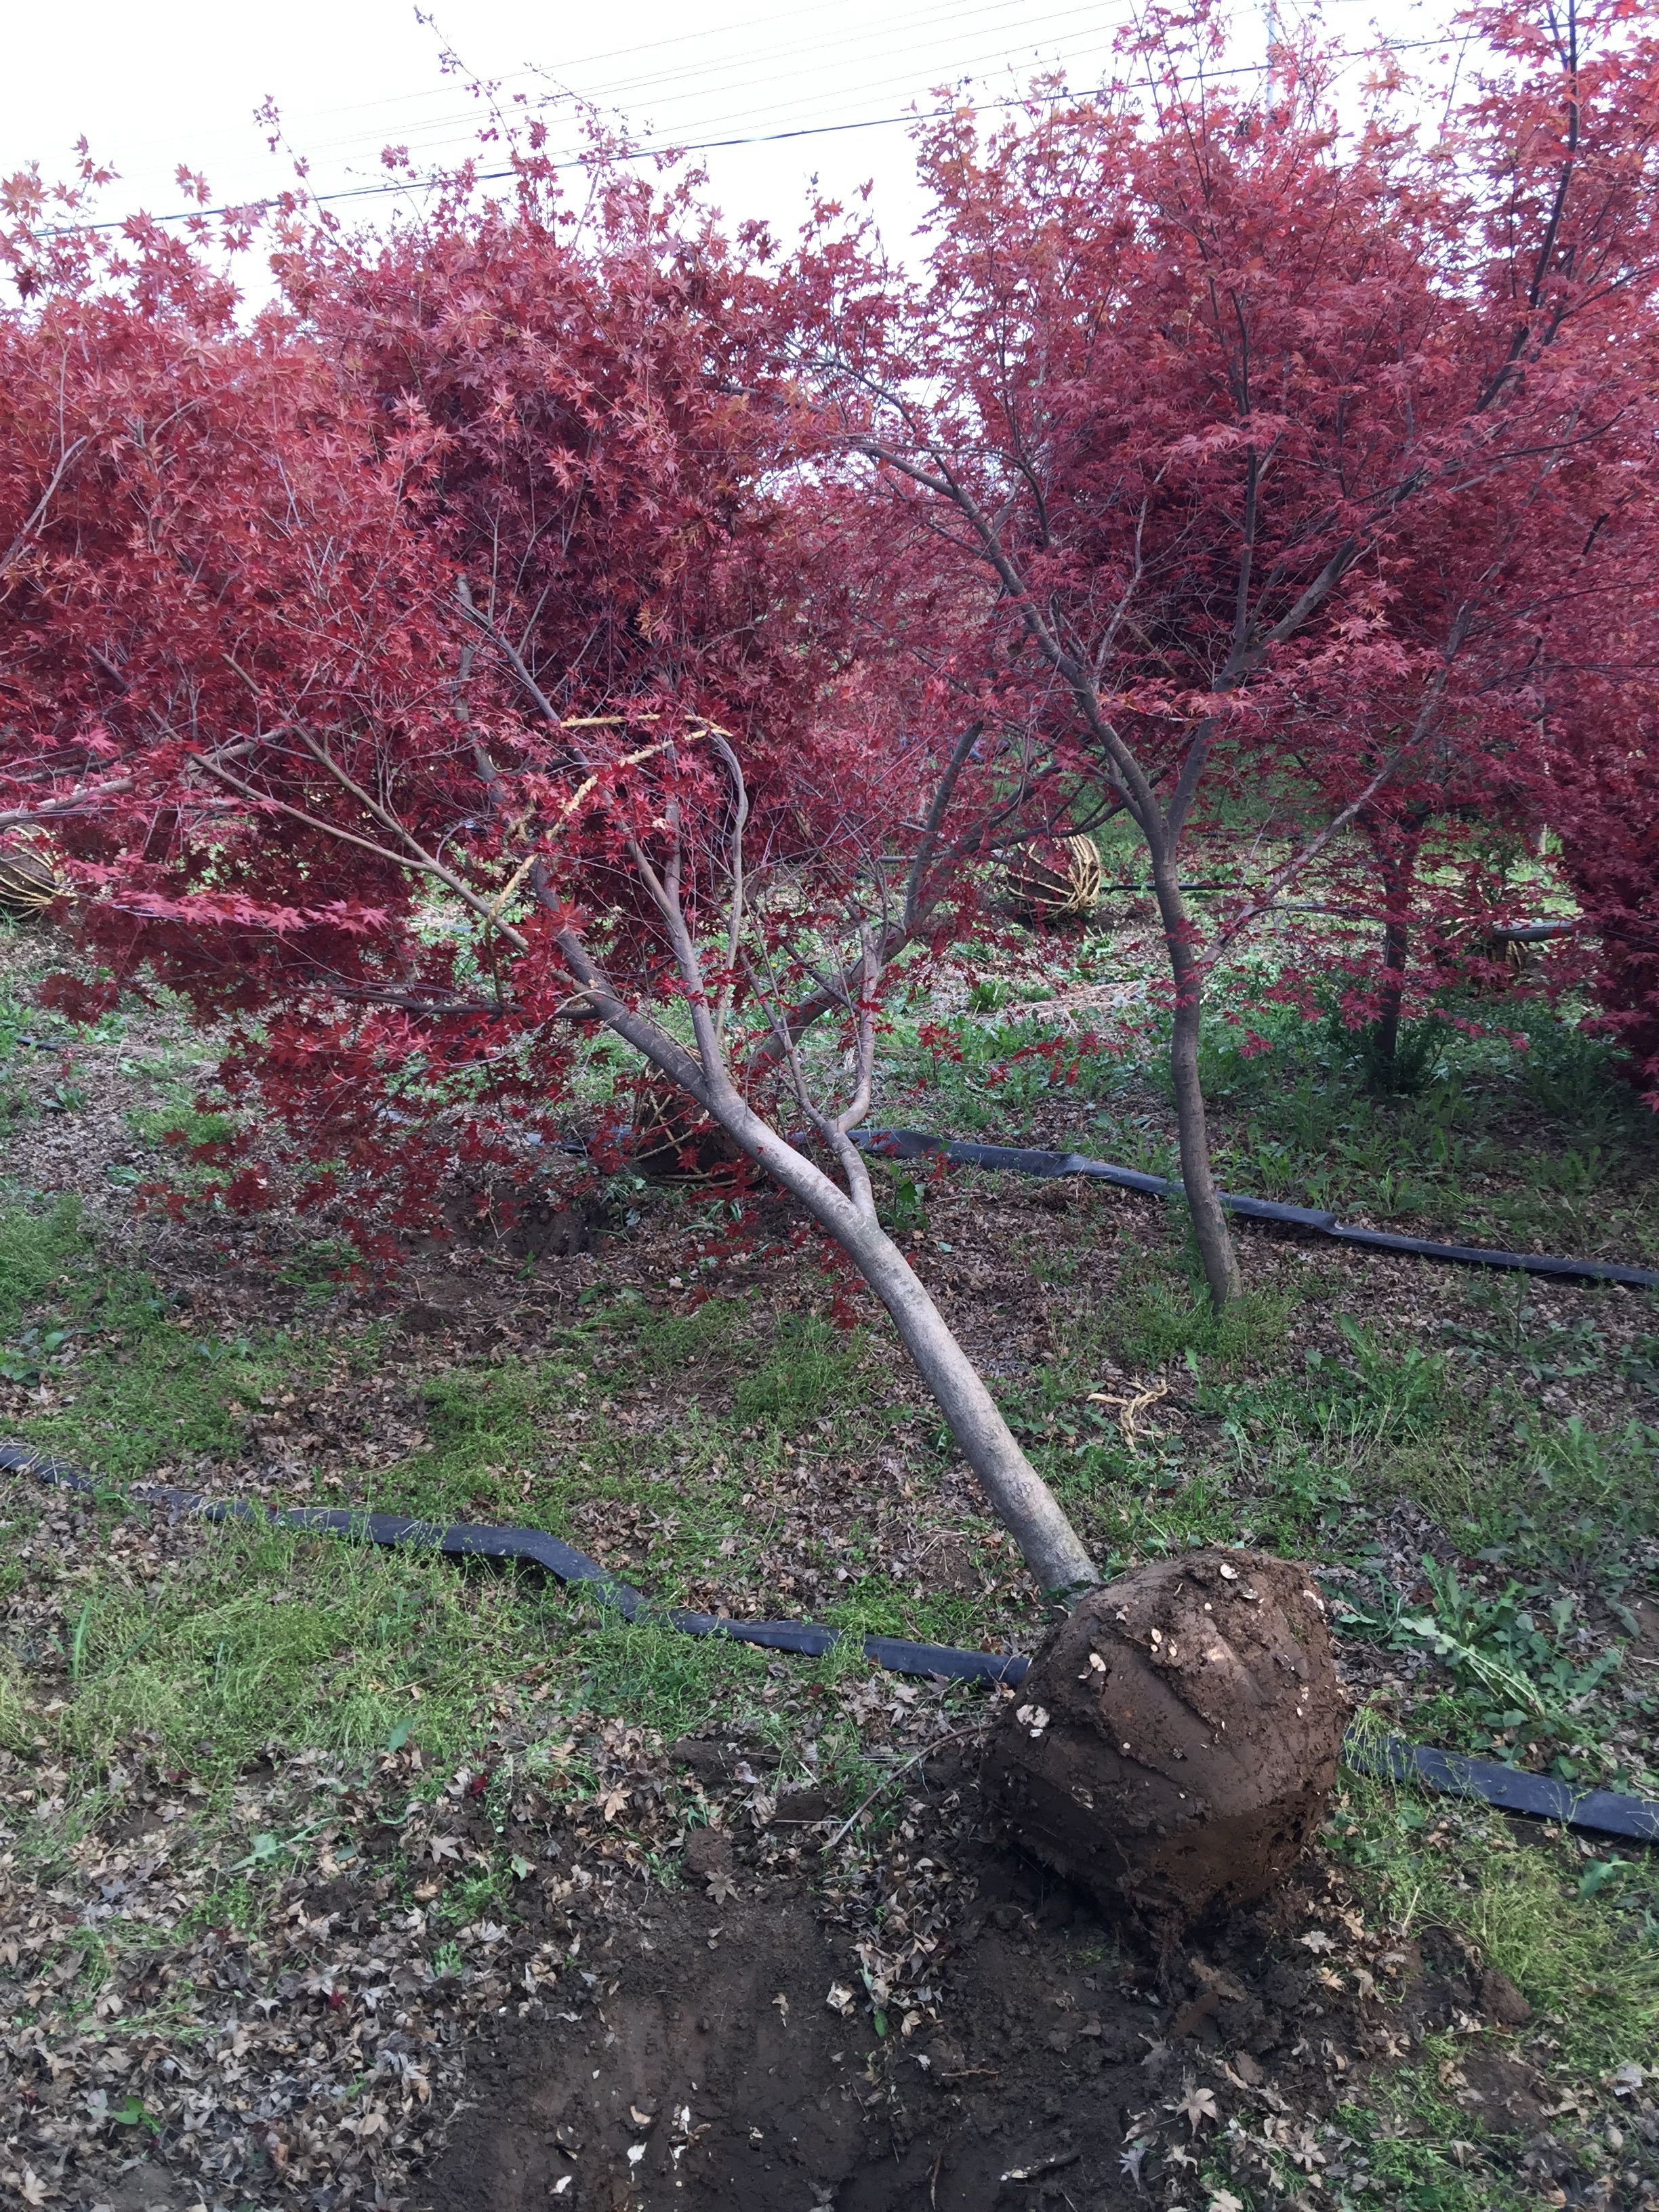 日本红枫树姿优美,春夏季新叶吐红,叶色鲜艳美丽,老叶则有返青表现